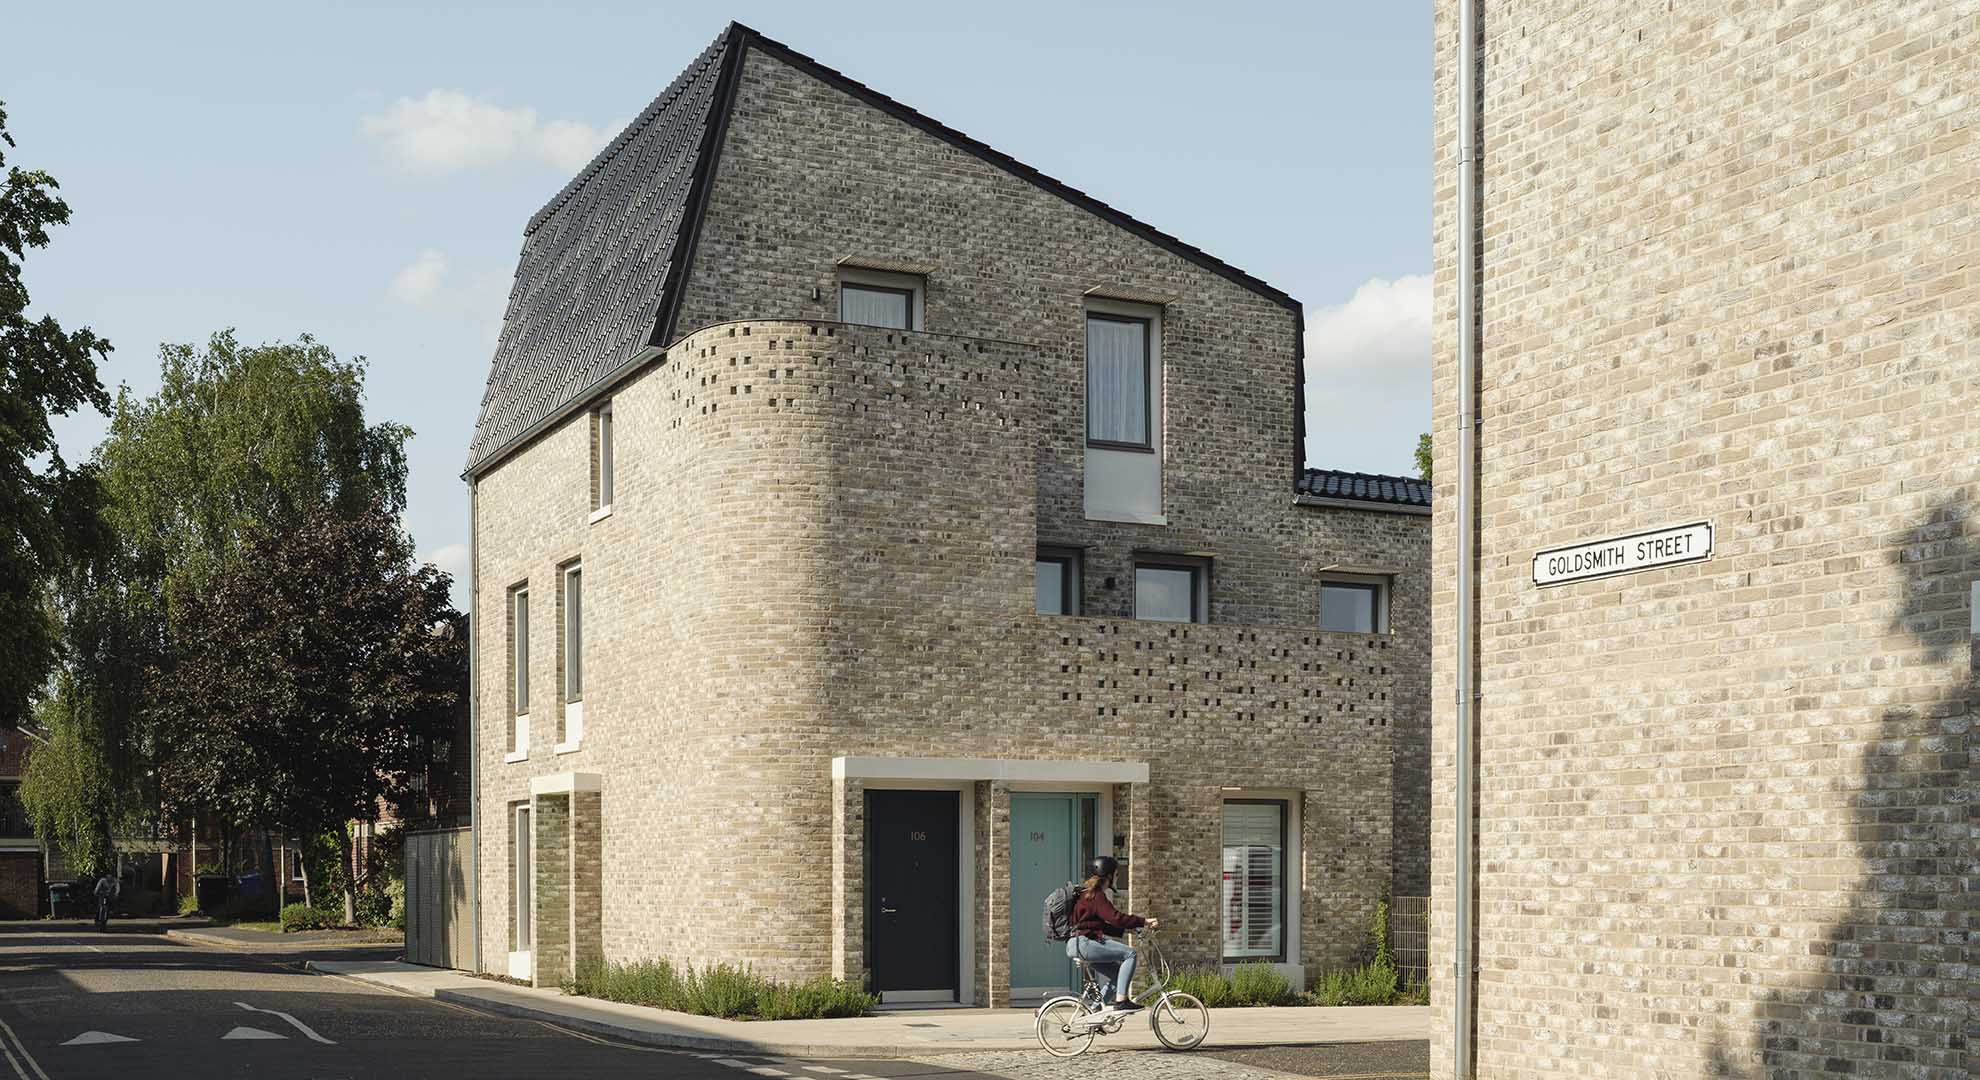 Proyecto de passivhaus en viviendas sociales, Norwich, Reino Unido